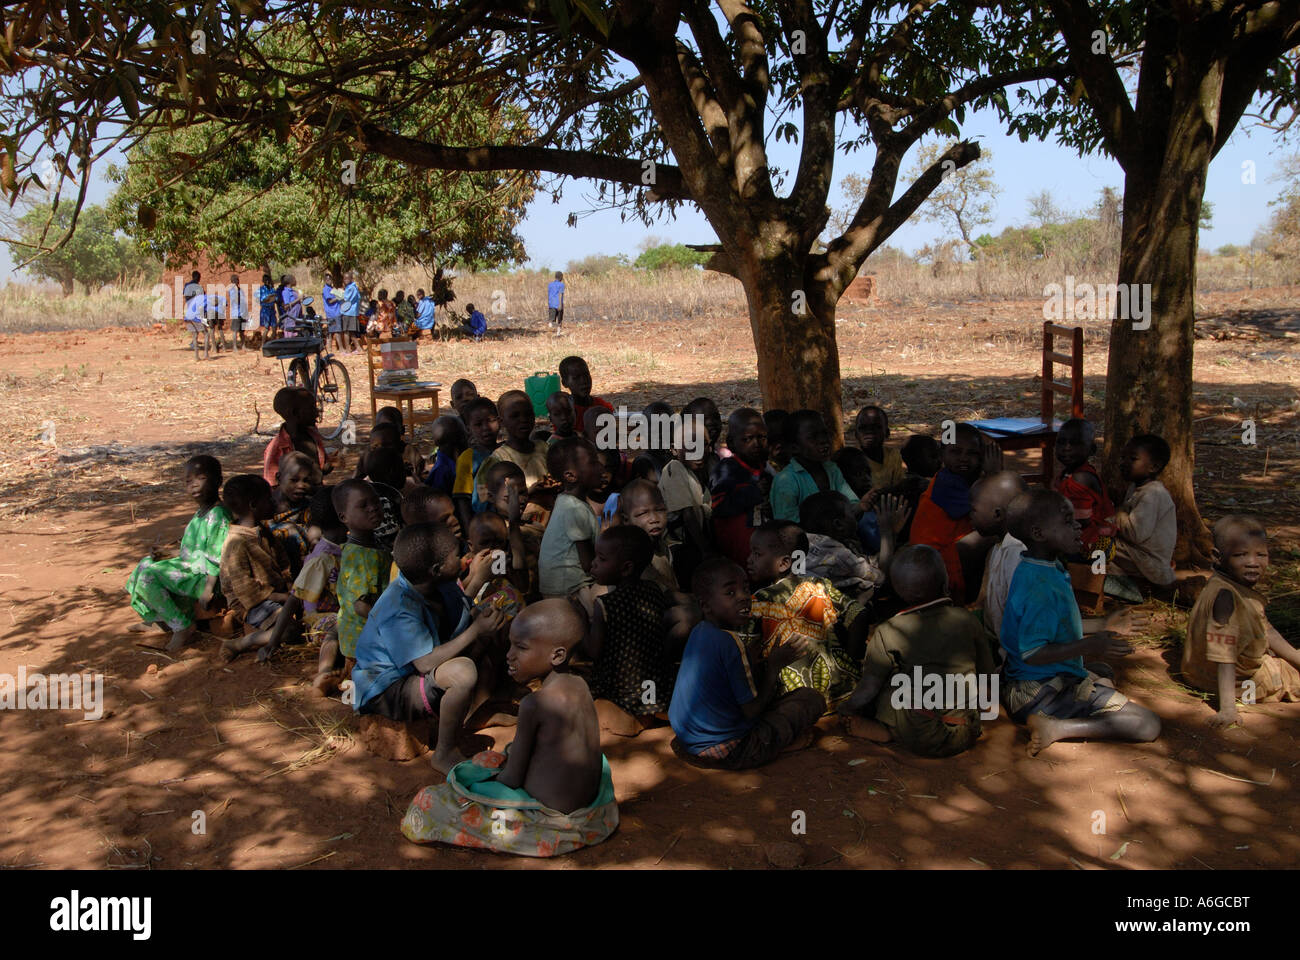 Uganda Lira Primary school under trees Stock Photo